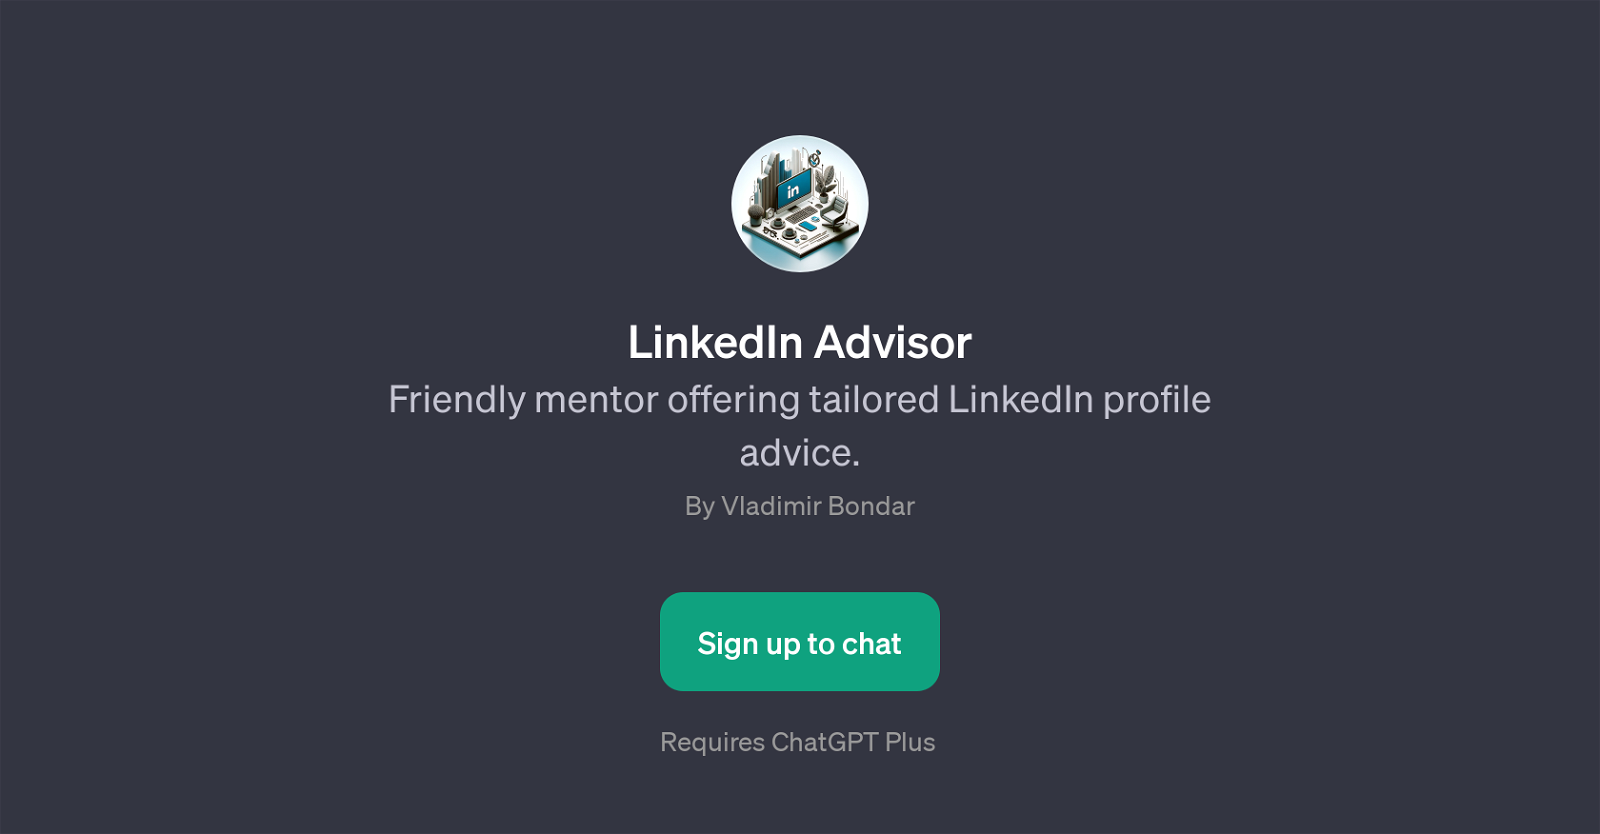 LinkedIn Advisor website